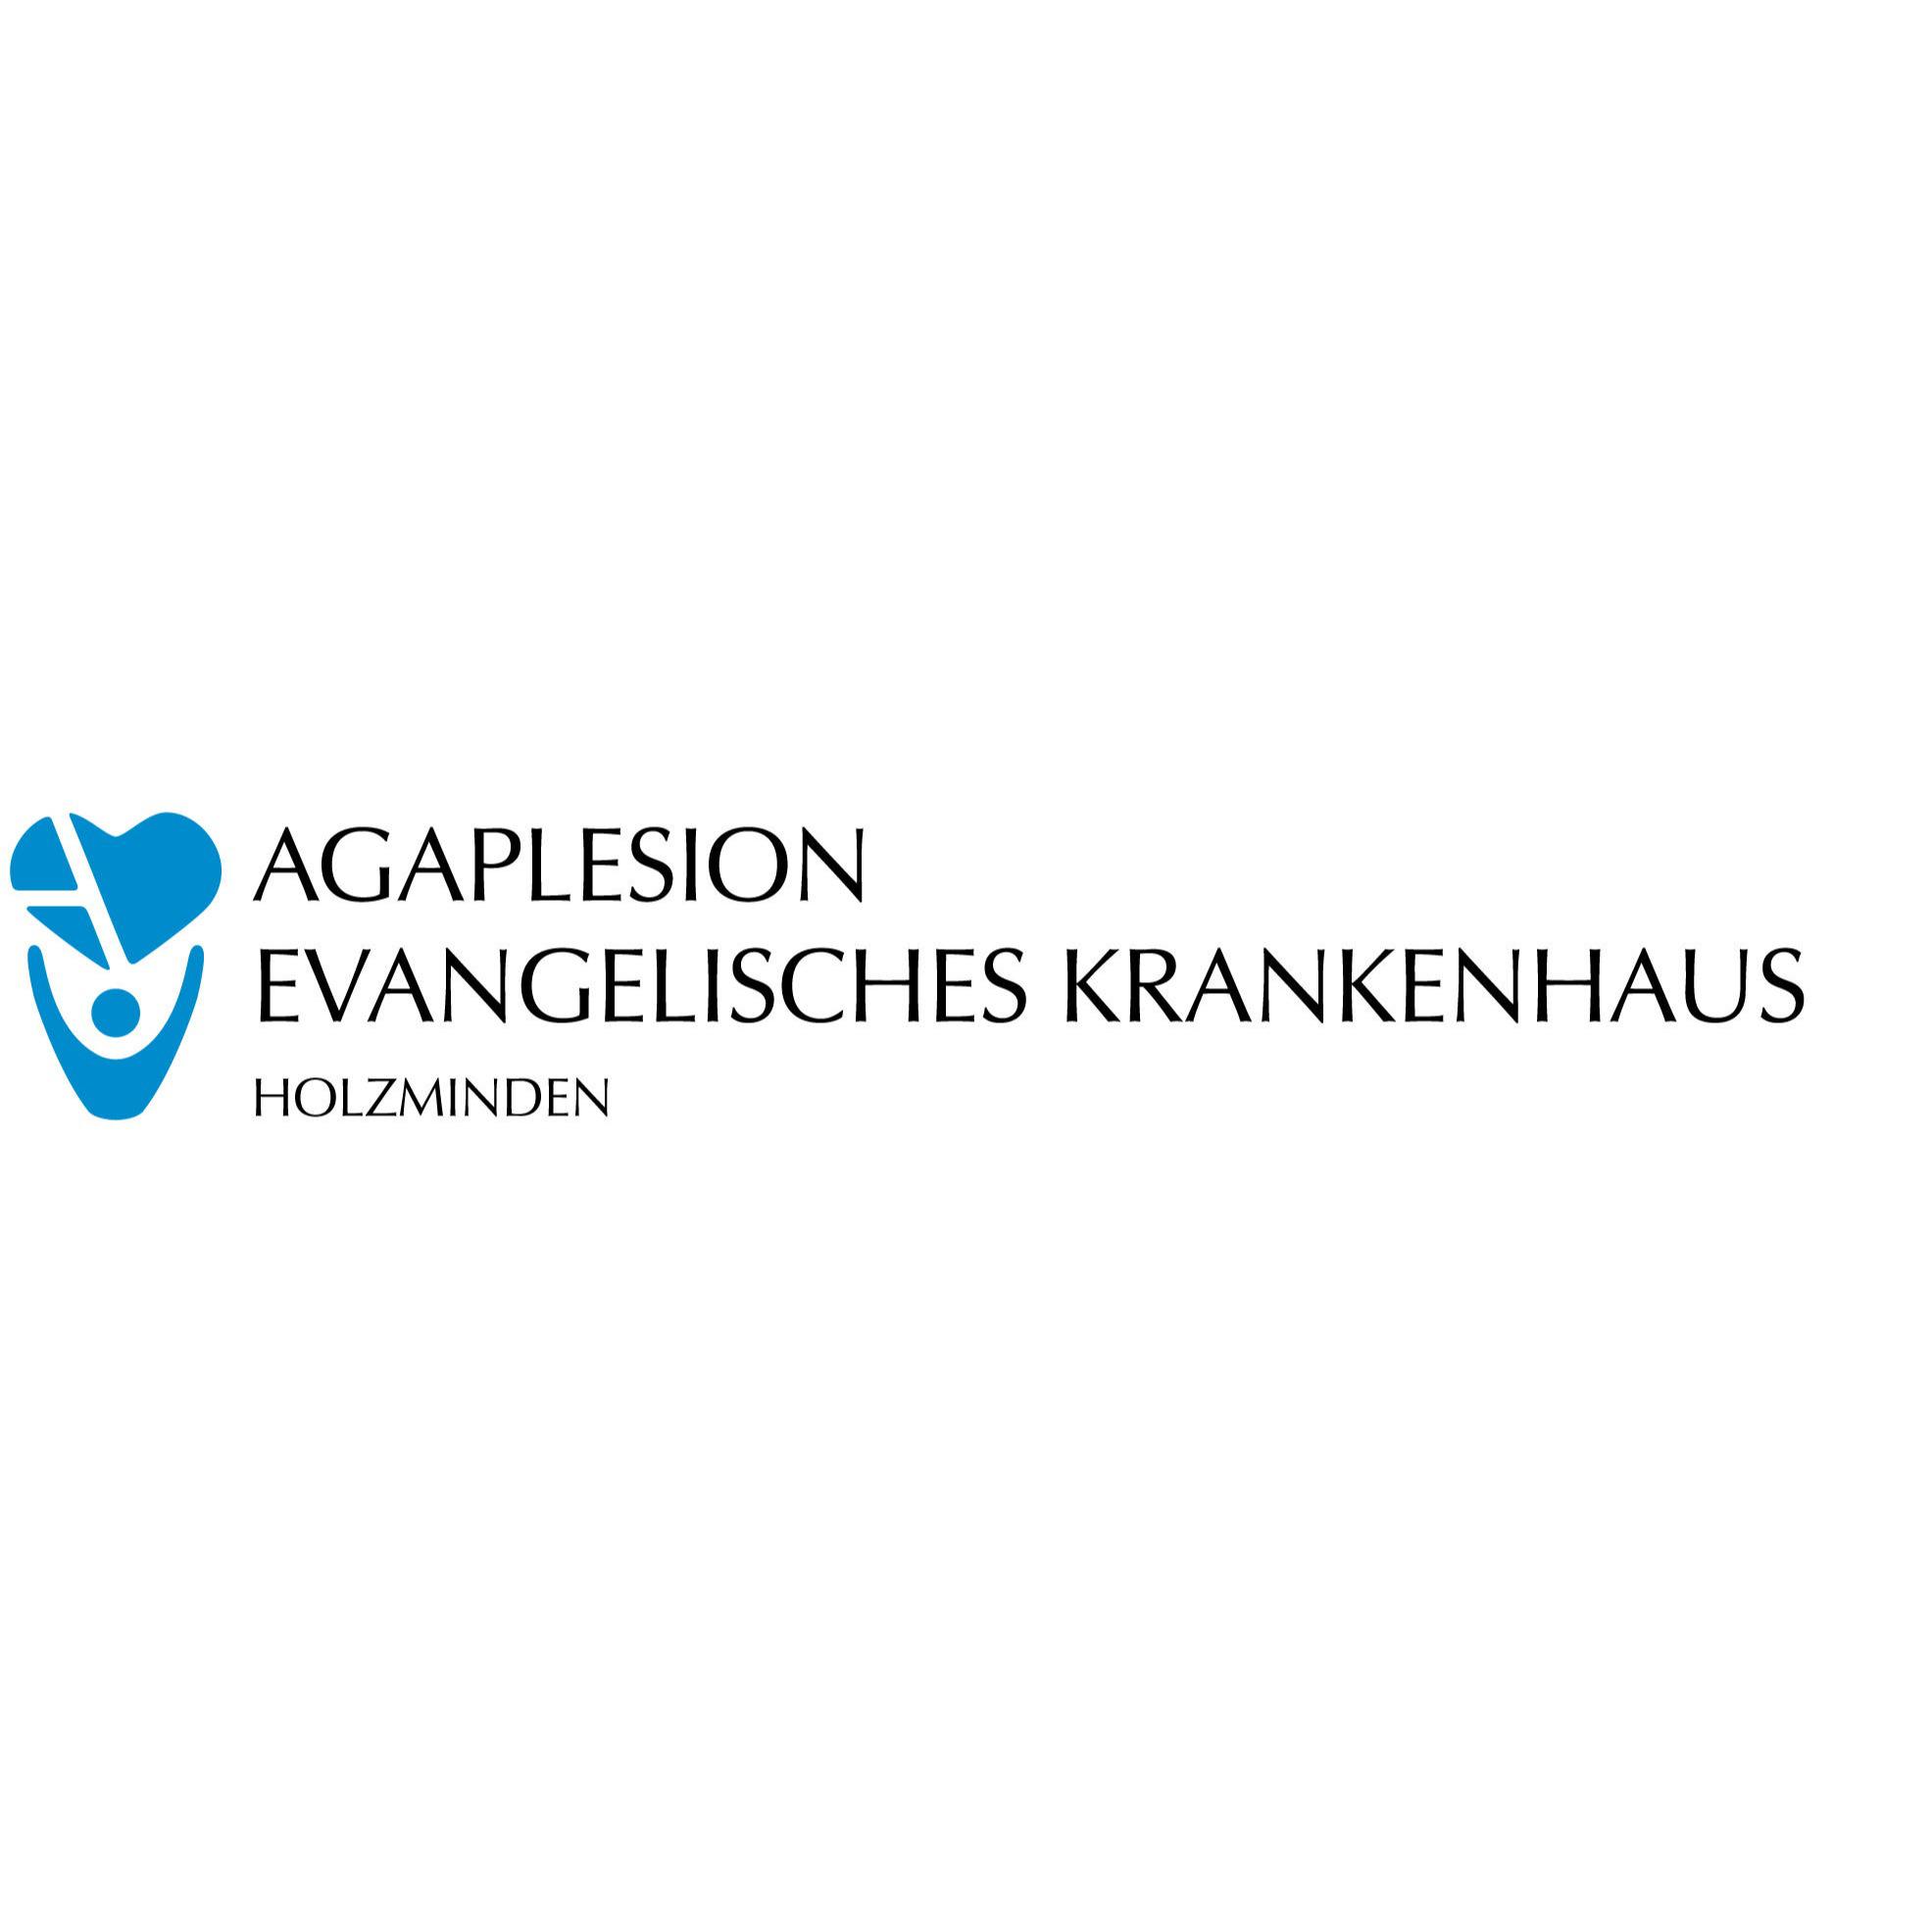 Unfallchirurgie am AGAPLESION EVANGELISCHES KRANKENHAUS HOLZMINDEN in Holzminden - Logo